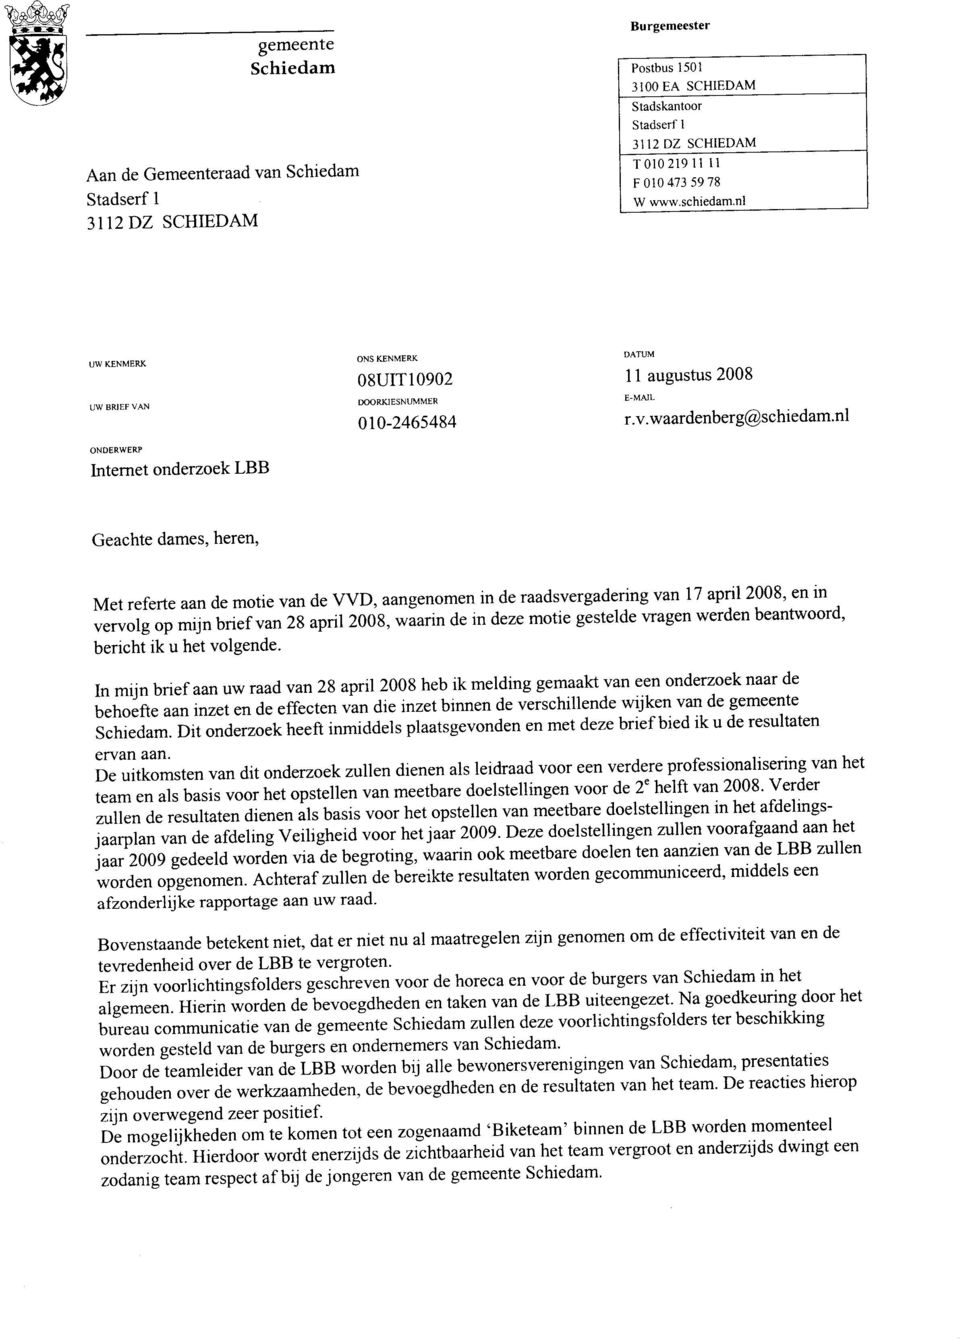 nl ONDERWERP Internet onderzoek LBB Geachte dames, heren, Met referte aan de motie van de VVD, aangenomen in de raadsvergadering van 17 apnl 2008, en m vervolg op mijn brief van 28 april 2008, waann